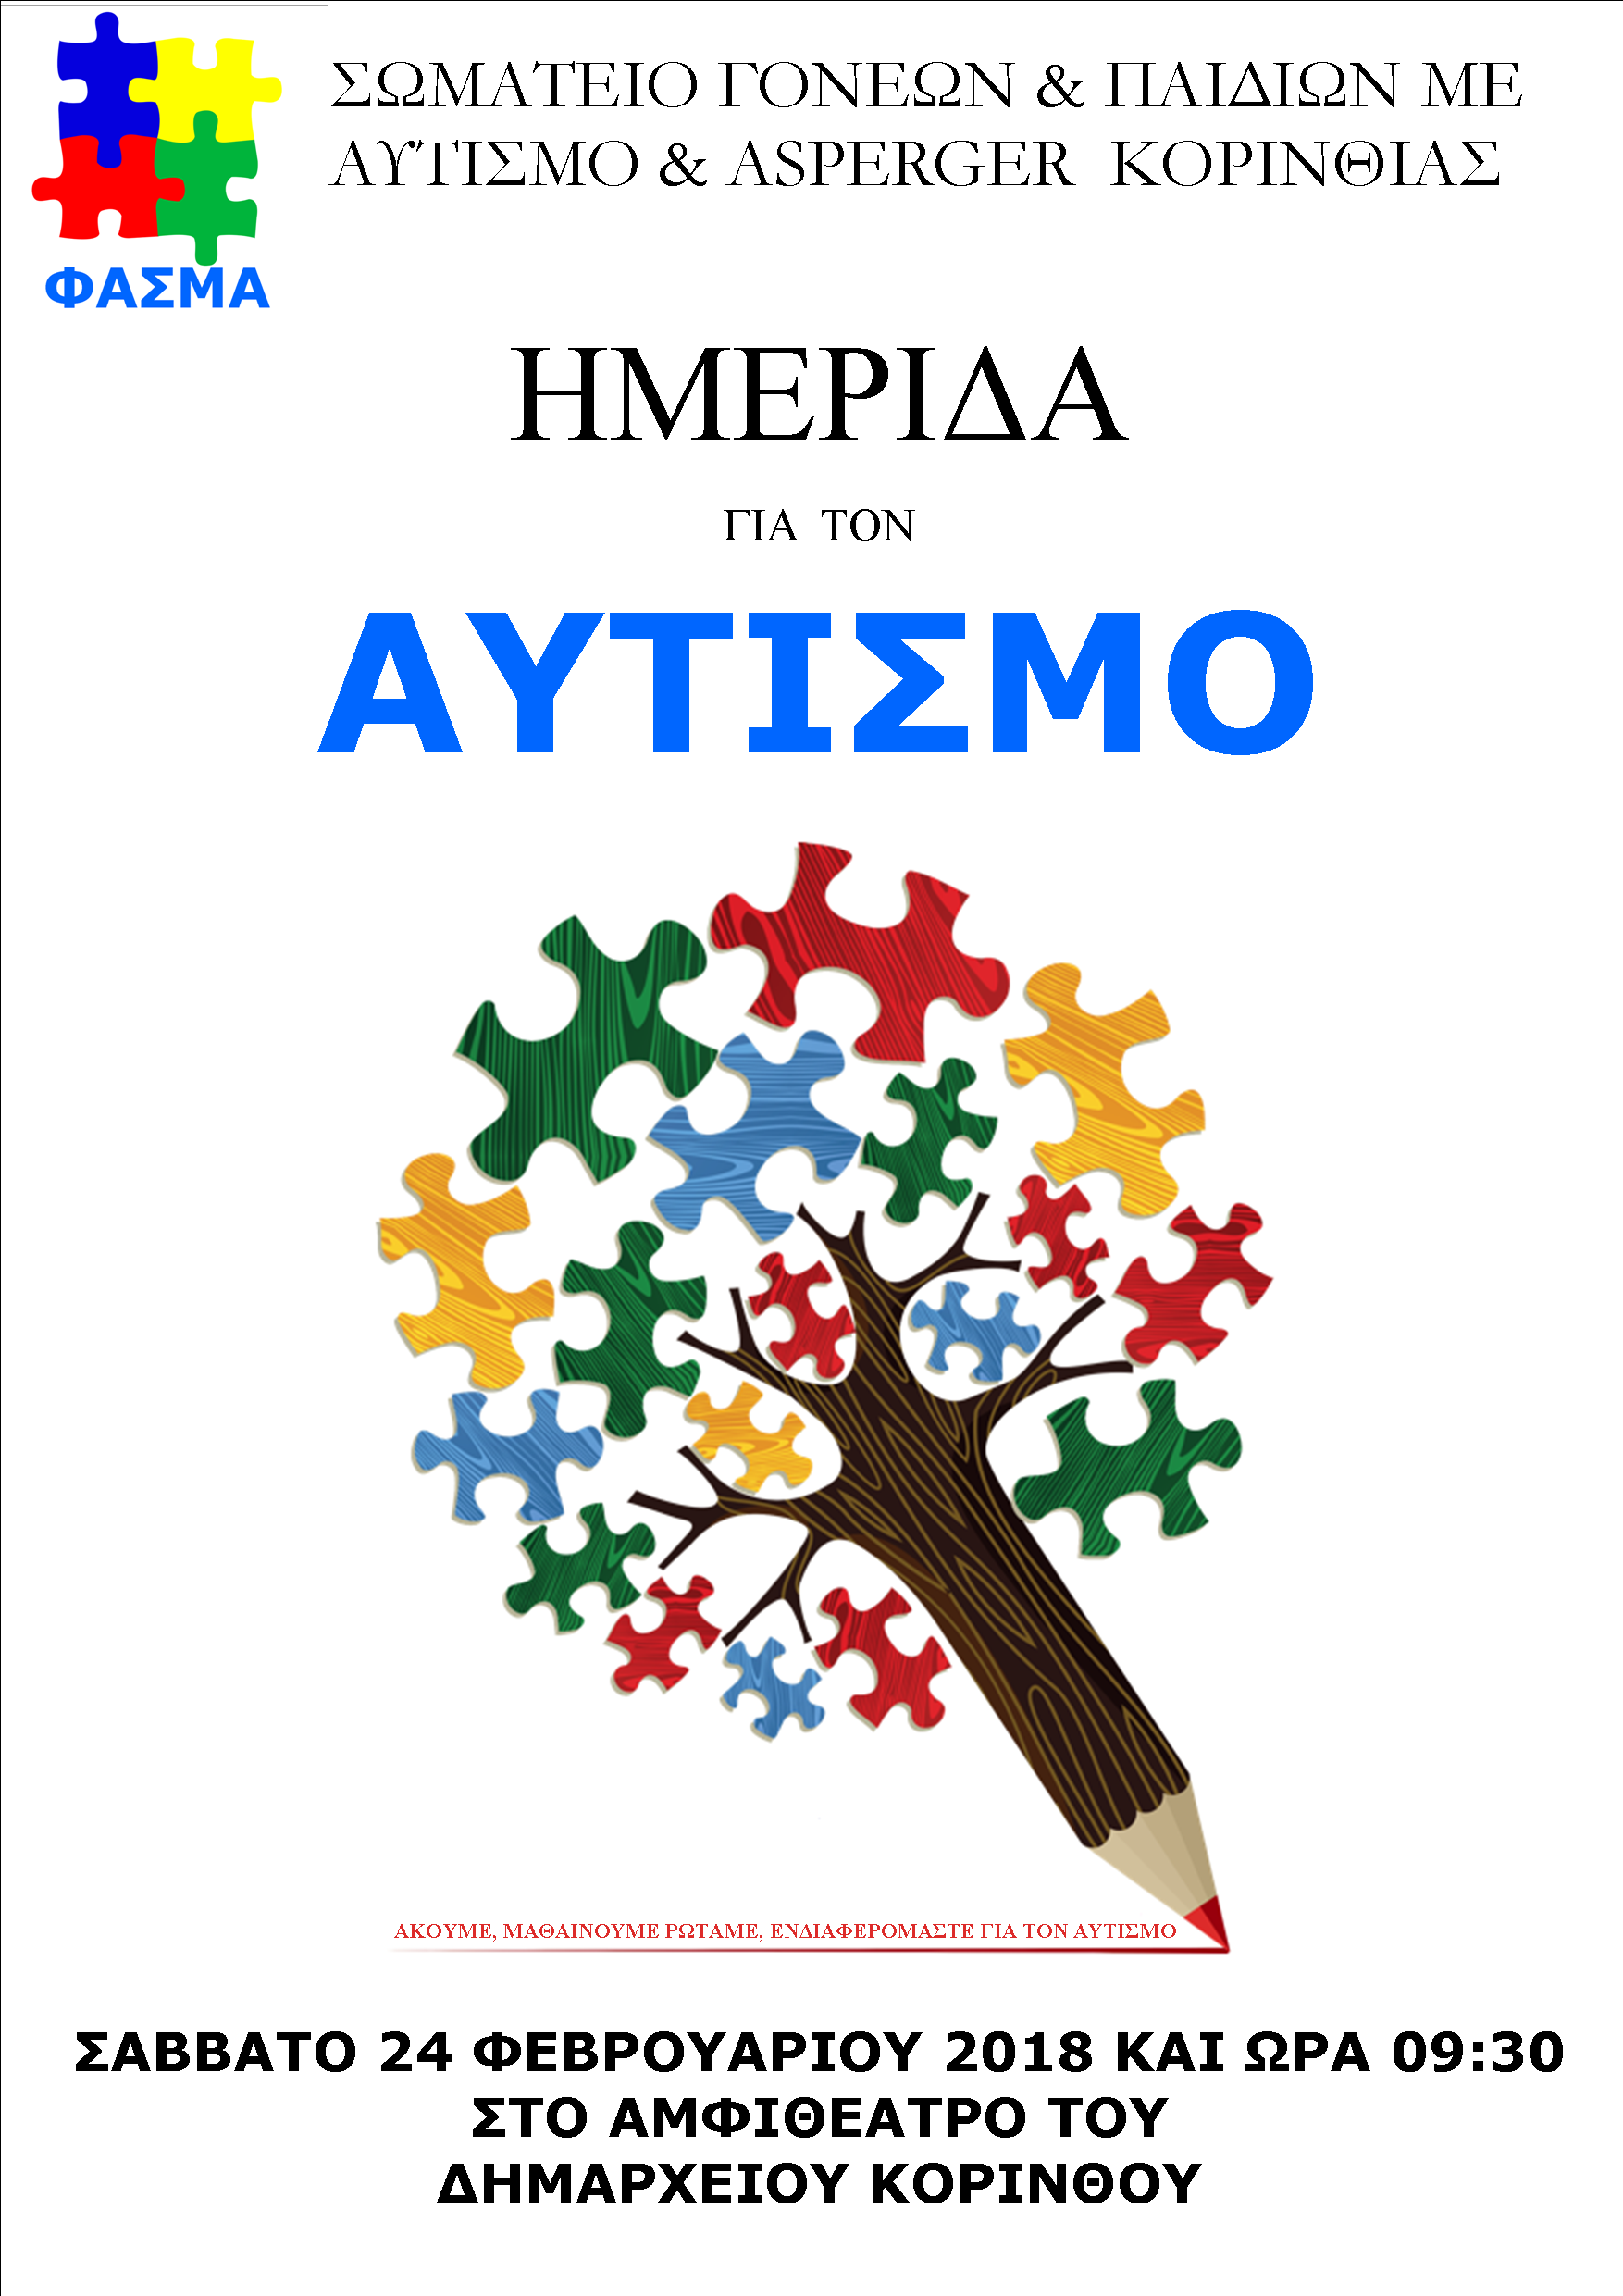 Ημερίδα για τον αυτισμό στην Κόρινθο / χωρίς τίτλο από το Σωματείο Γονέων και Συγγενών Παιδιών με Αυτισμό και Asperger Κορινθίας με τον διακριτικό τίτλο Φάσμα.